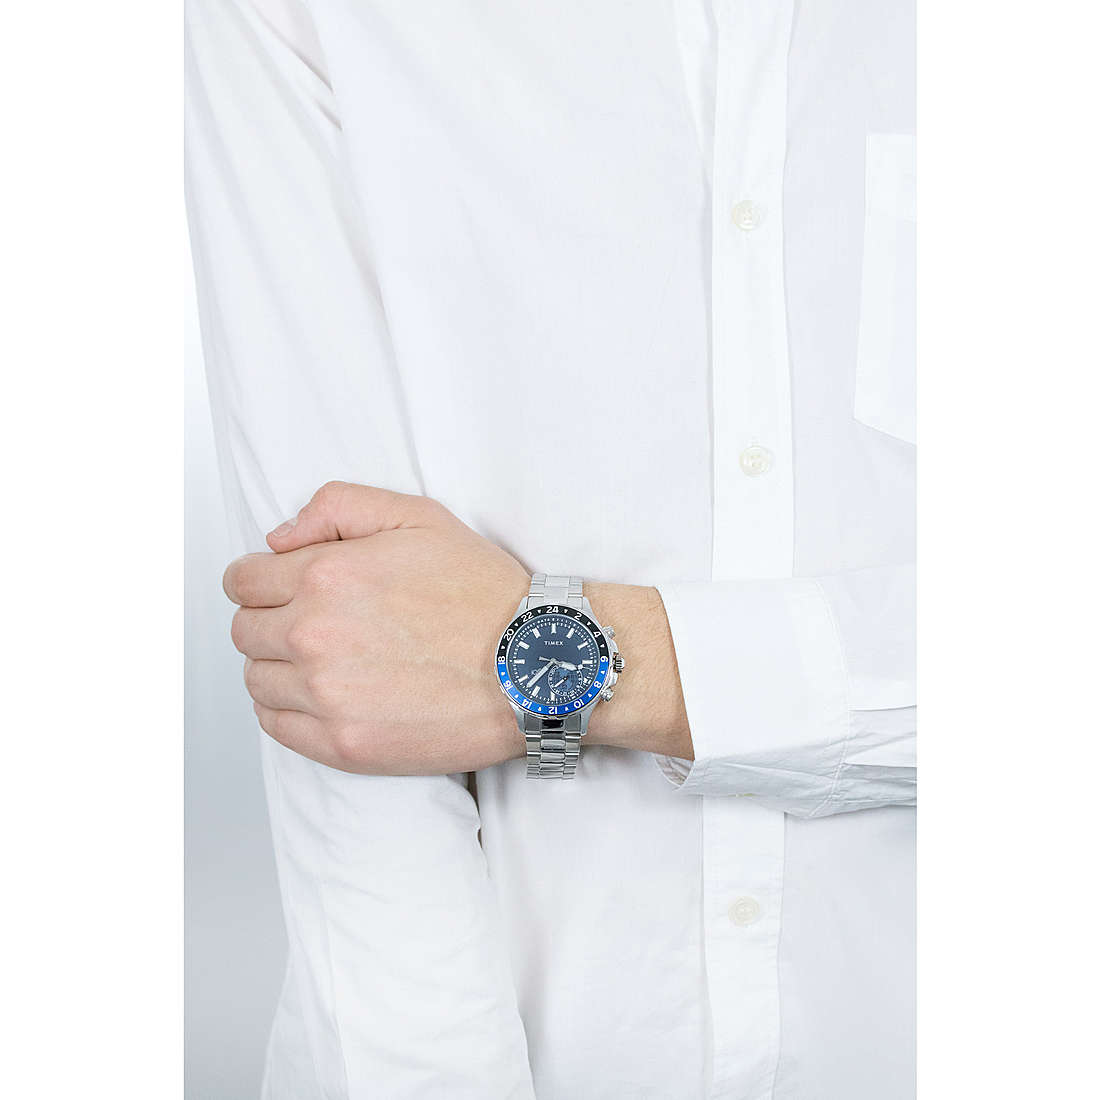 Timex Smartwatches IQ+ uomo TW2R39700 indosso